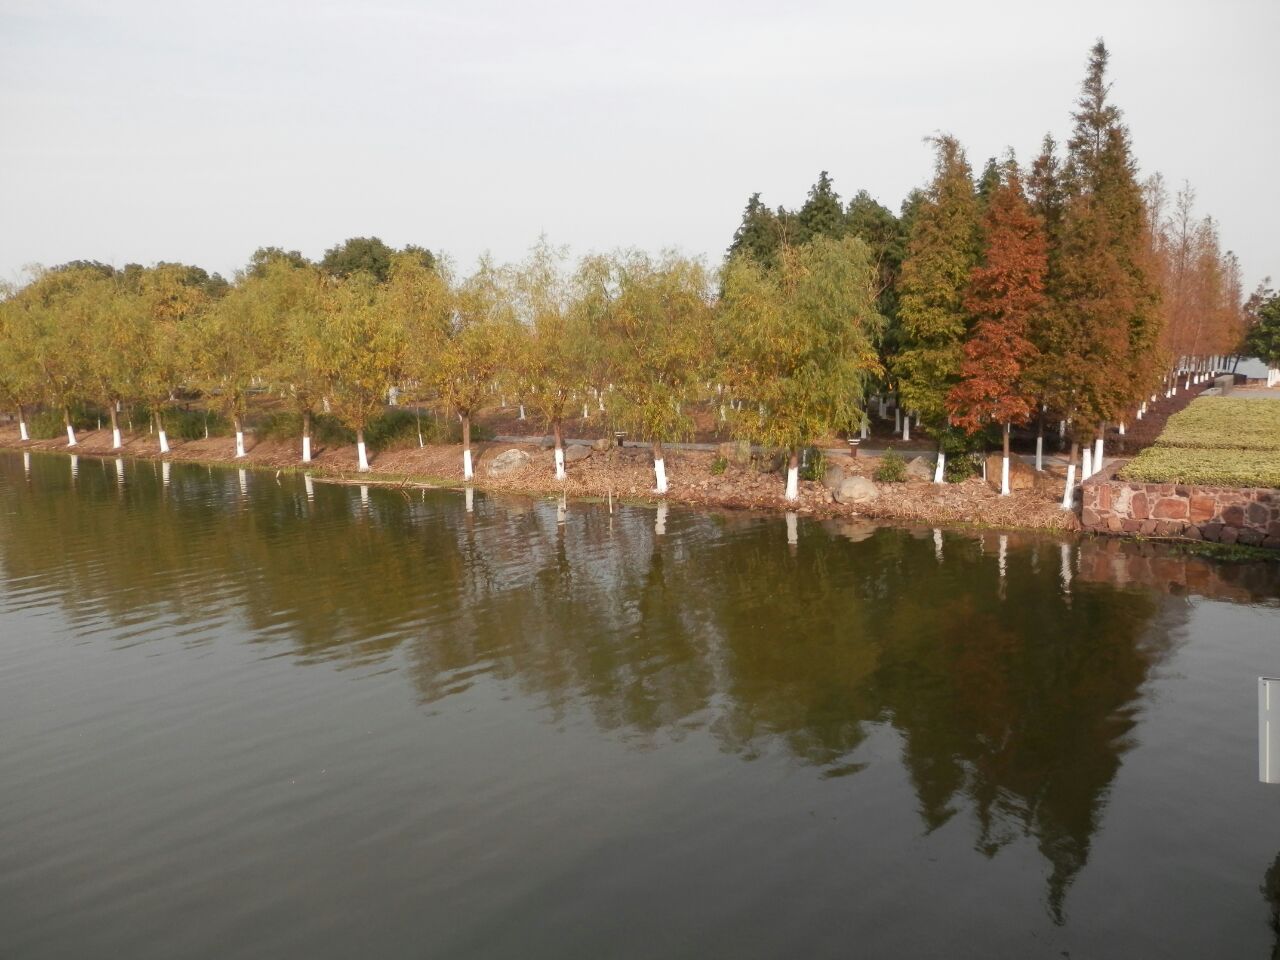 【携程攻略】莆田白塘湖公园景点,“白塘秋月”是莆田二十四景之一，公园景色一般，湖很大，适合附近的…